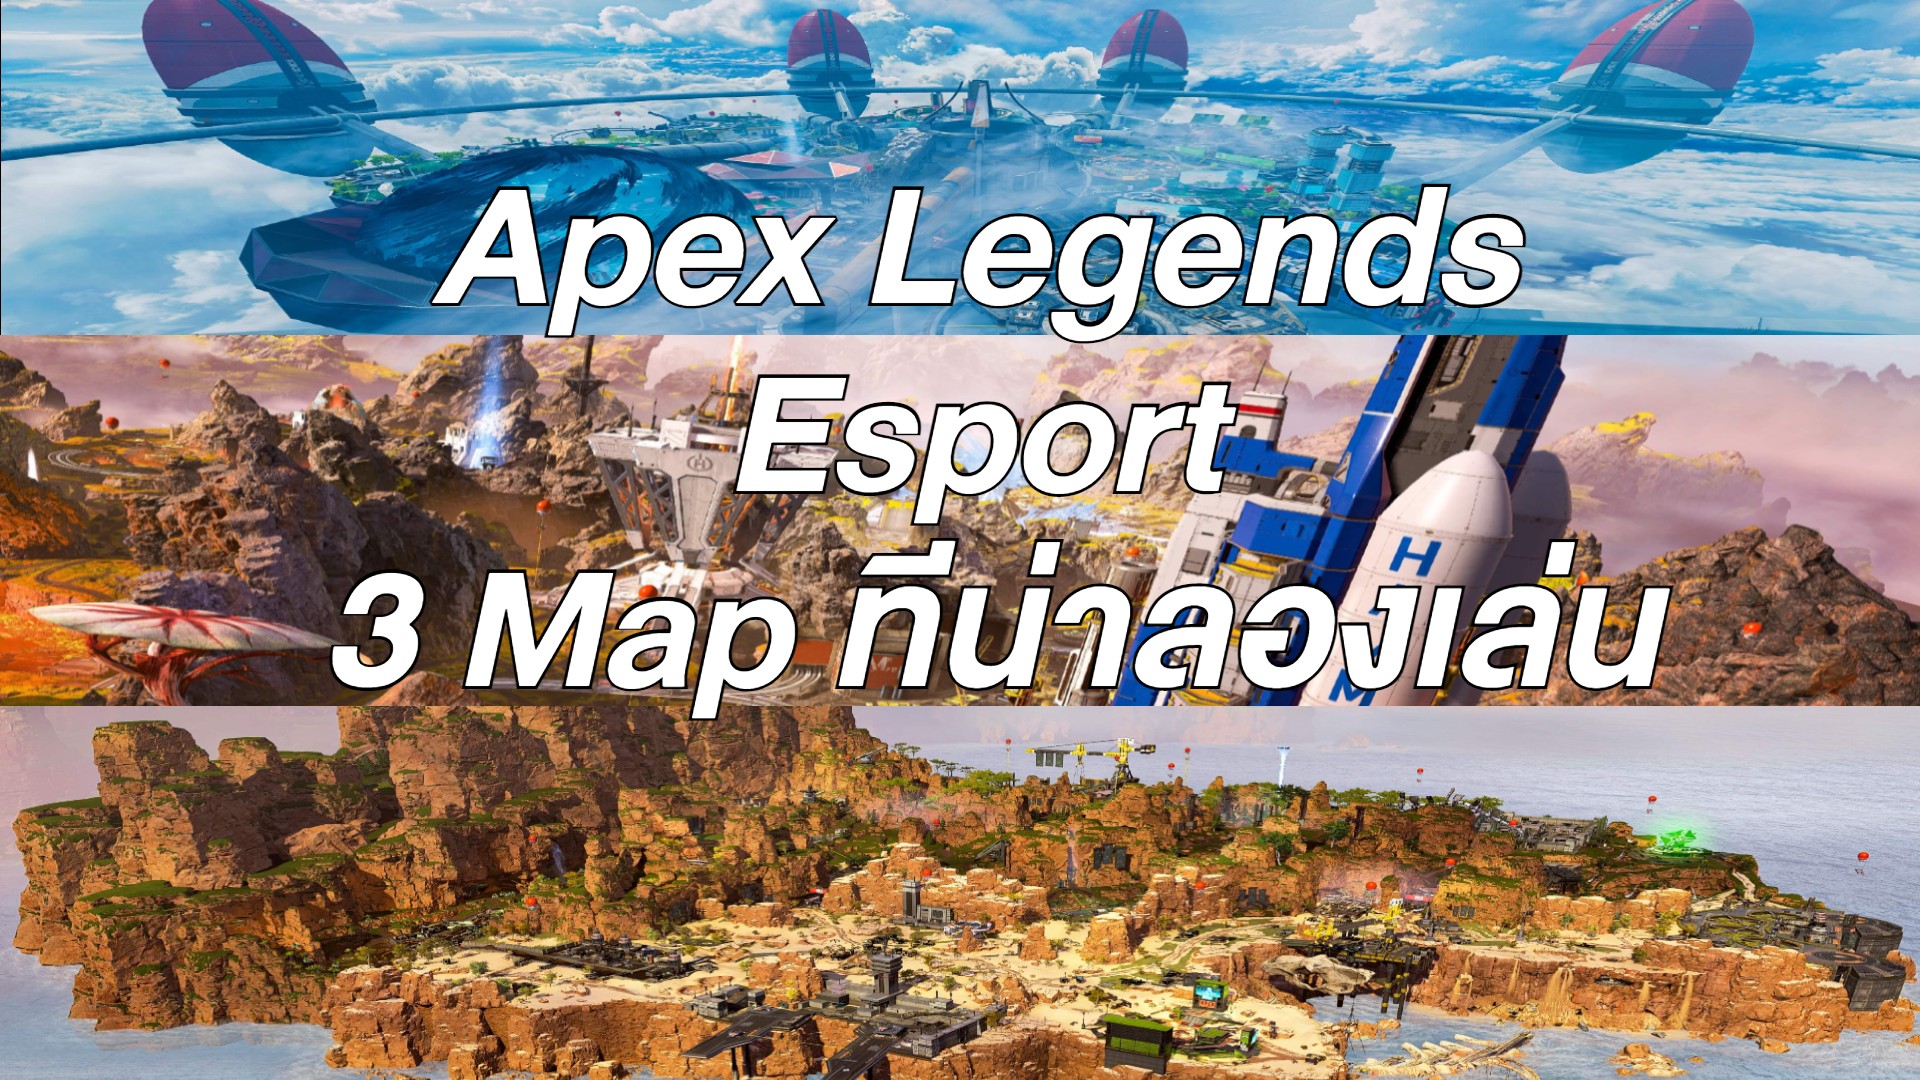 Apex Legends Esport